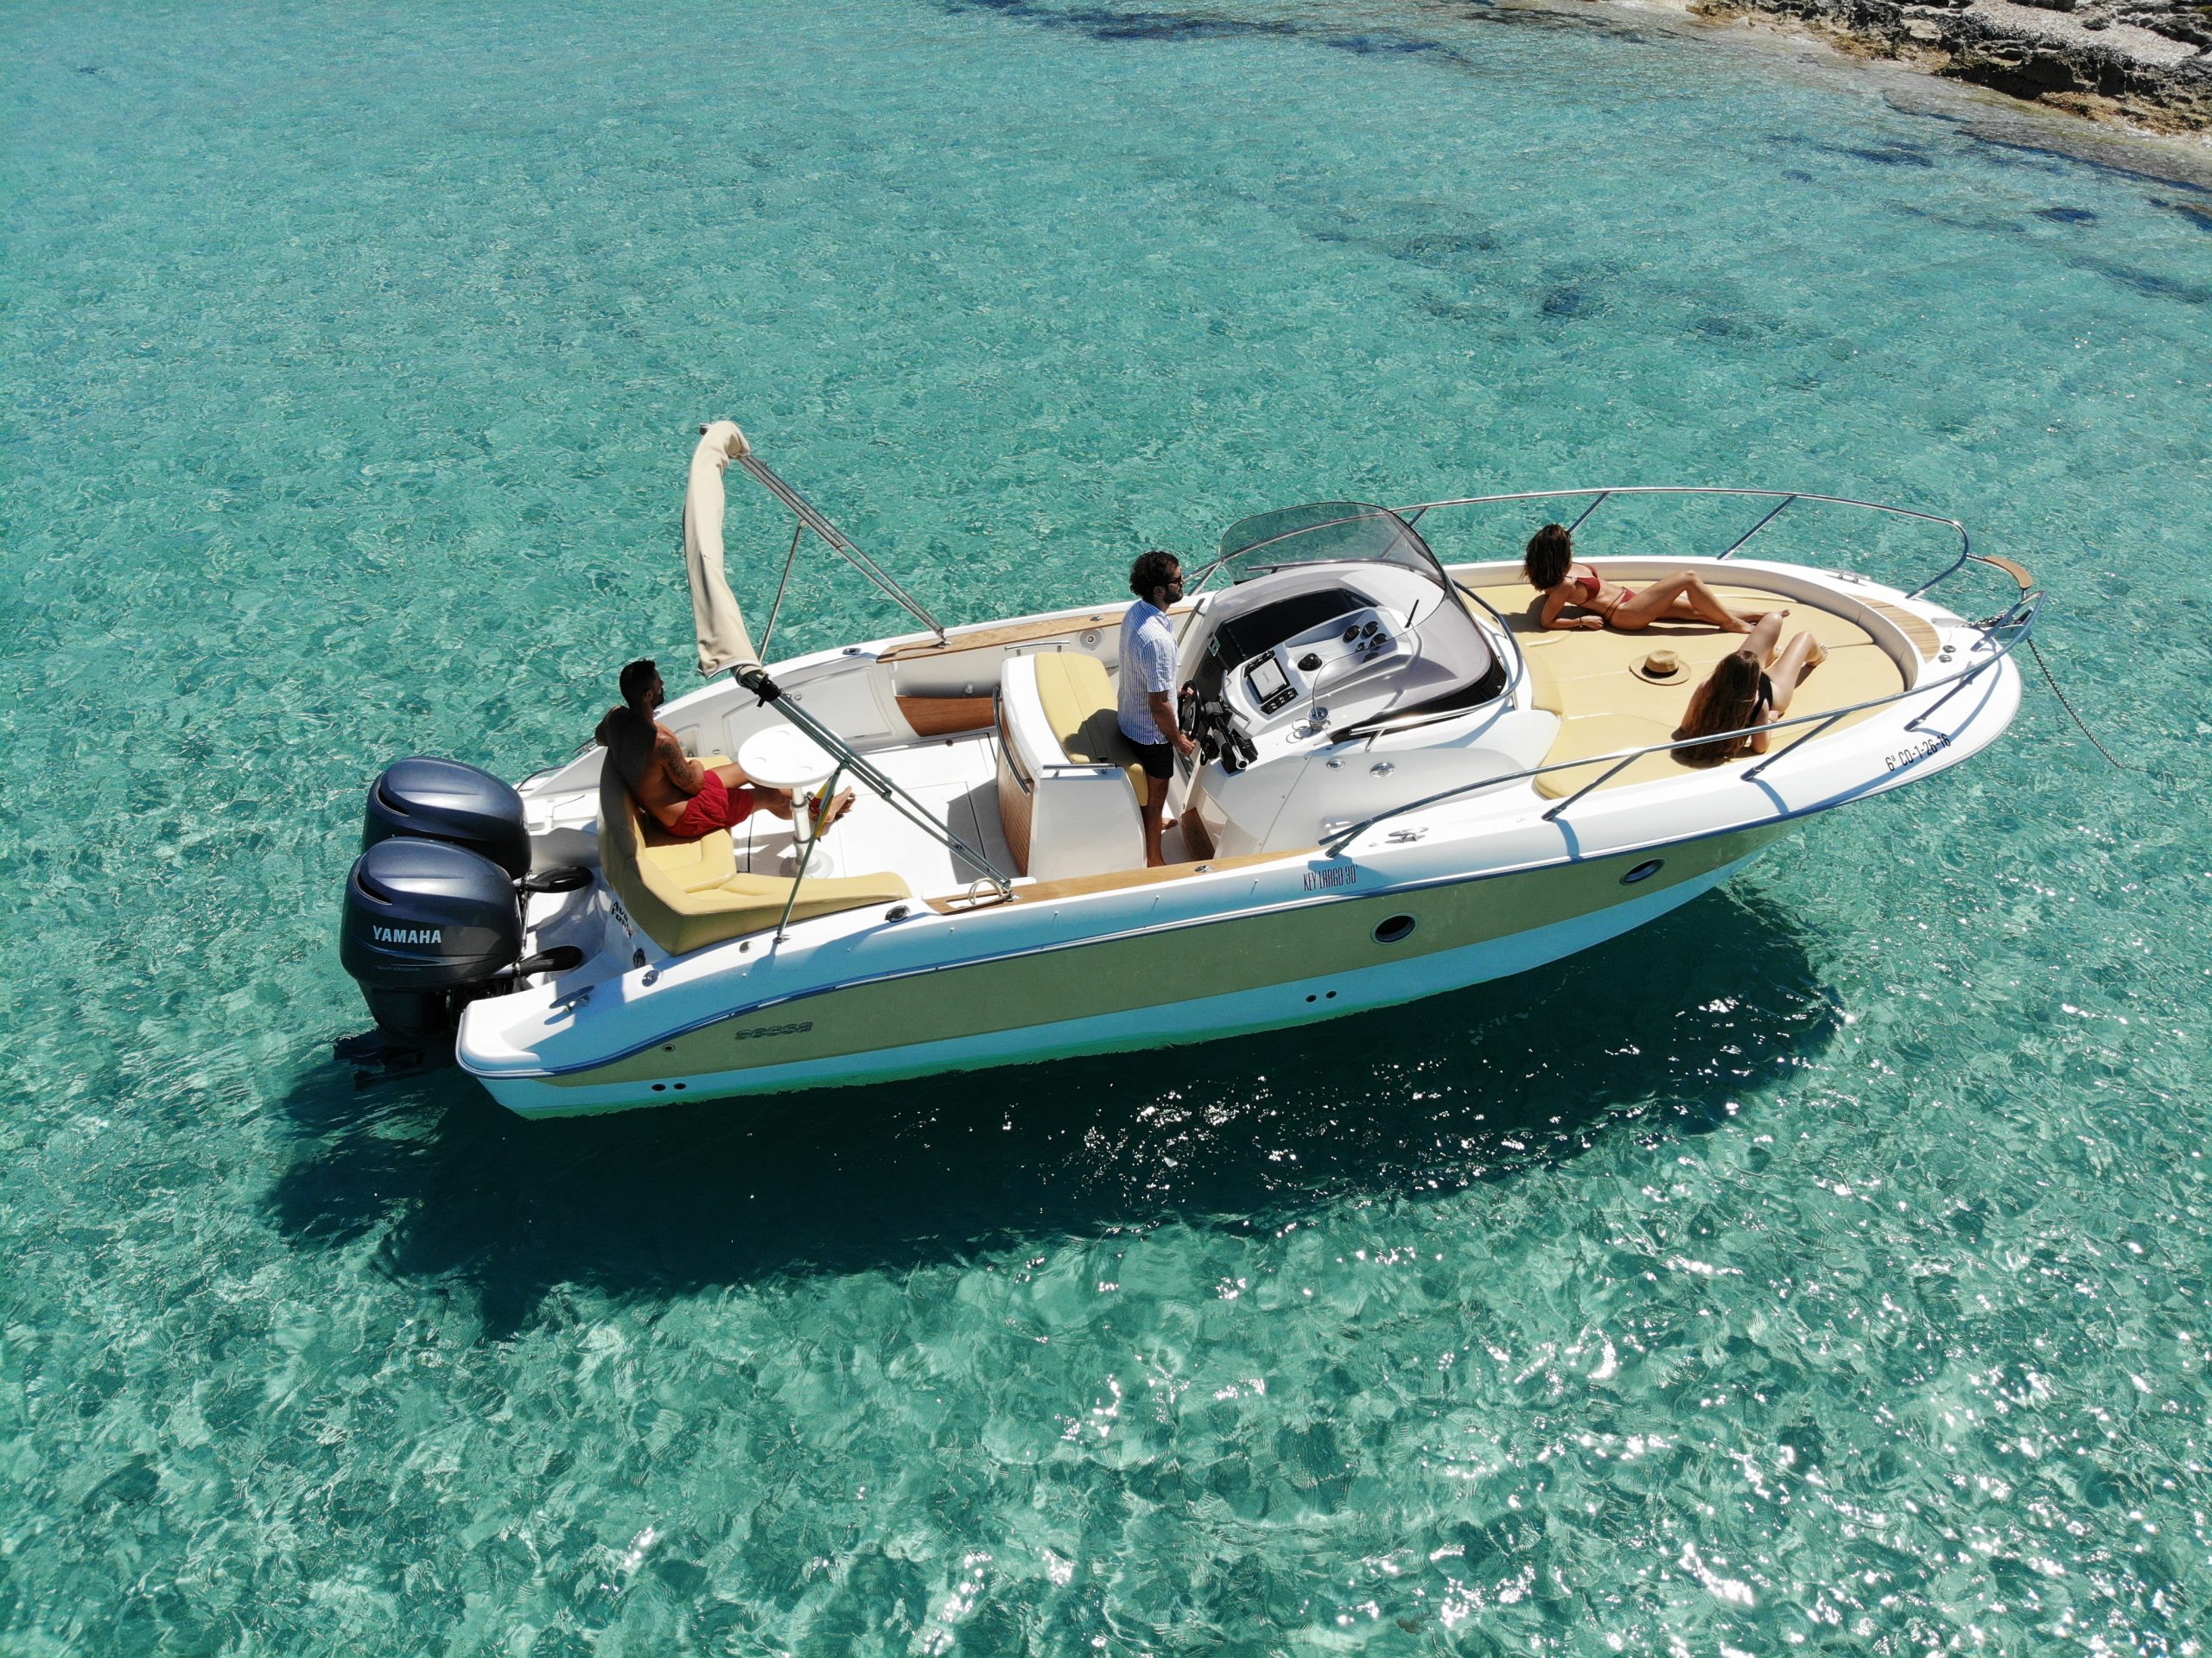 Alquiler rent location llogar barco boat bateau ibiza SessaMarineKeyLargo30AveFenix